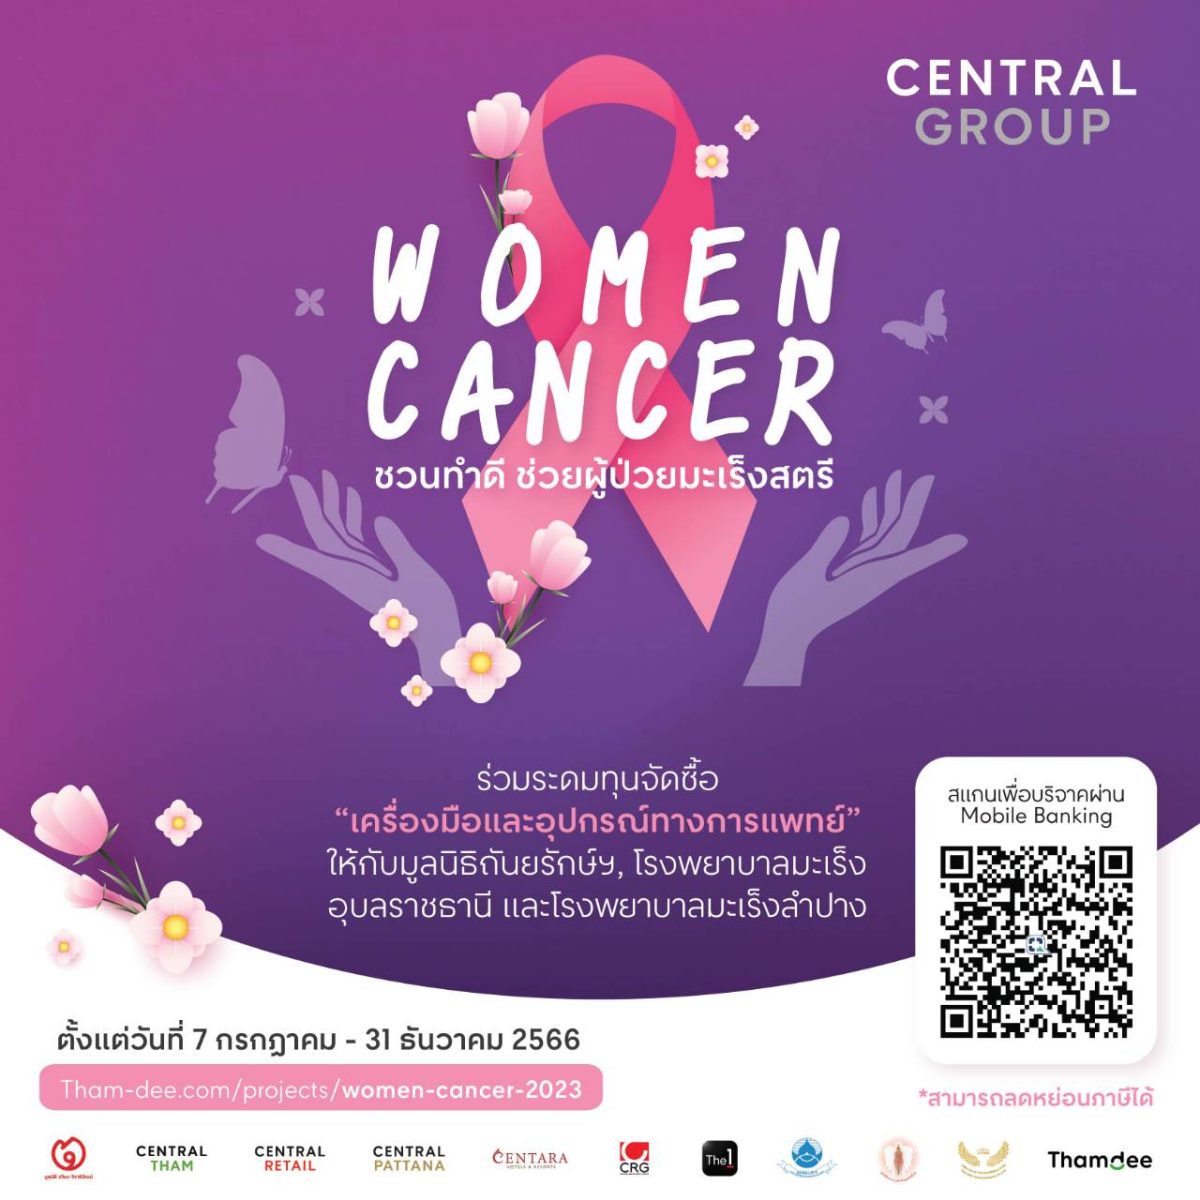 กลุ่มเซ็นทรัล และบริษัทในเครือ ชวนระดมทุนจัดซื้อ เครื่องมือและอุปกรณ์การแพทย์ กับโครงการ Central Group Women Cancer ครั้งที่ 18